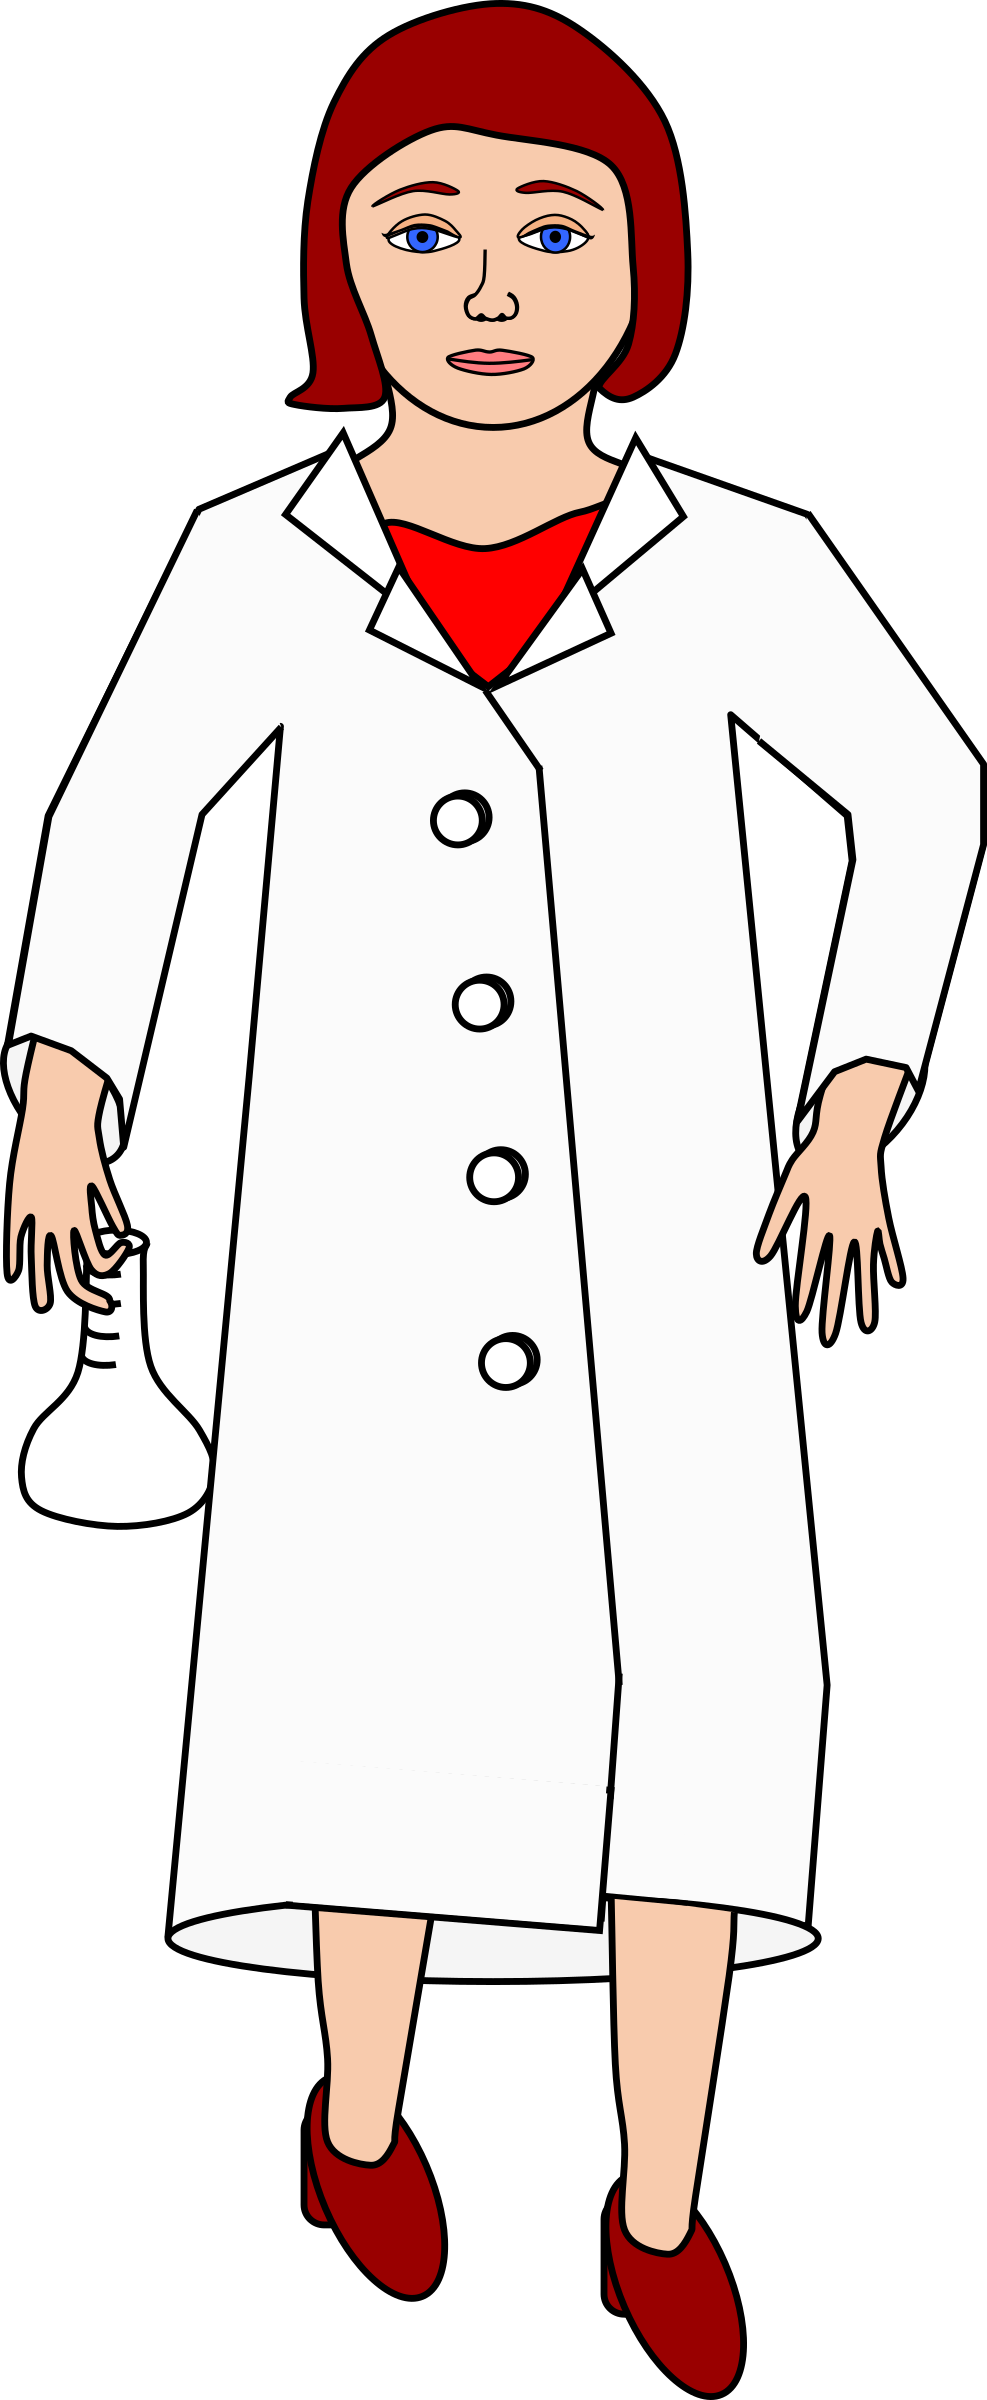 Coat scientist coat